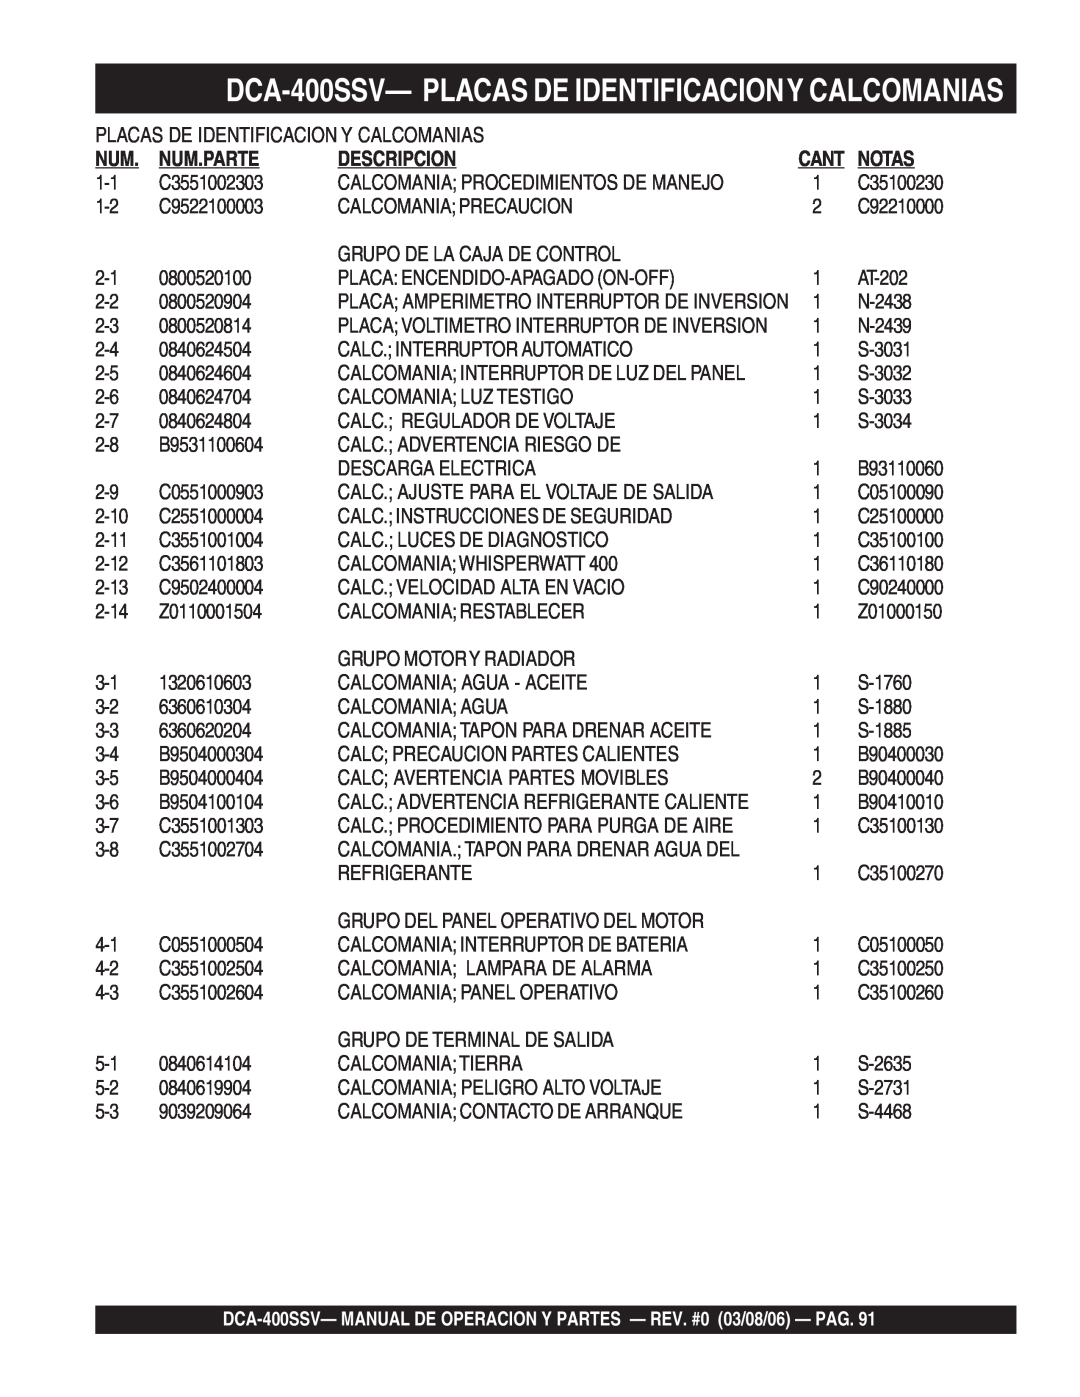 Multiquip DCA-400SSV—PLACAS DE IDENTIFICACIONY CALCOMANIAS, Placas De Identificacion Y Calcomanias, Num.Parte, Notas 